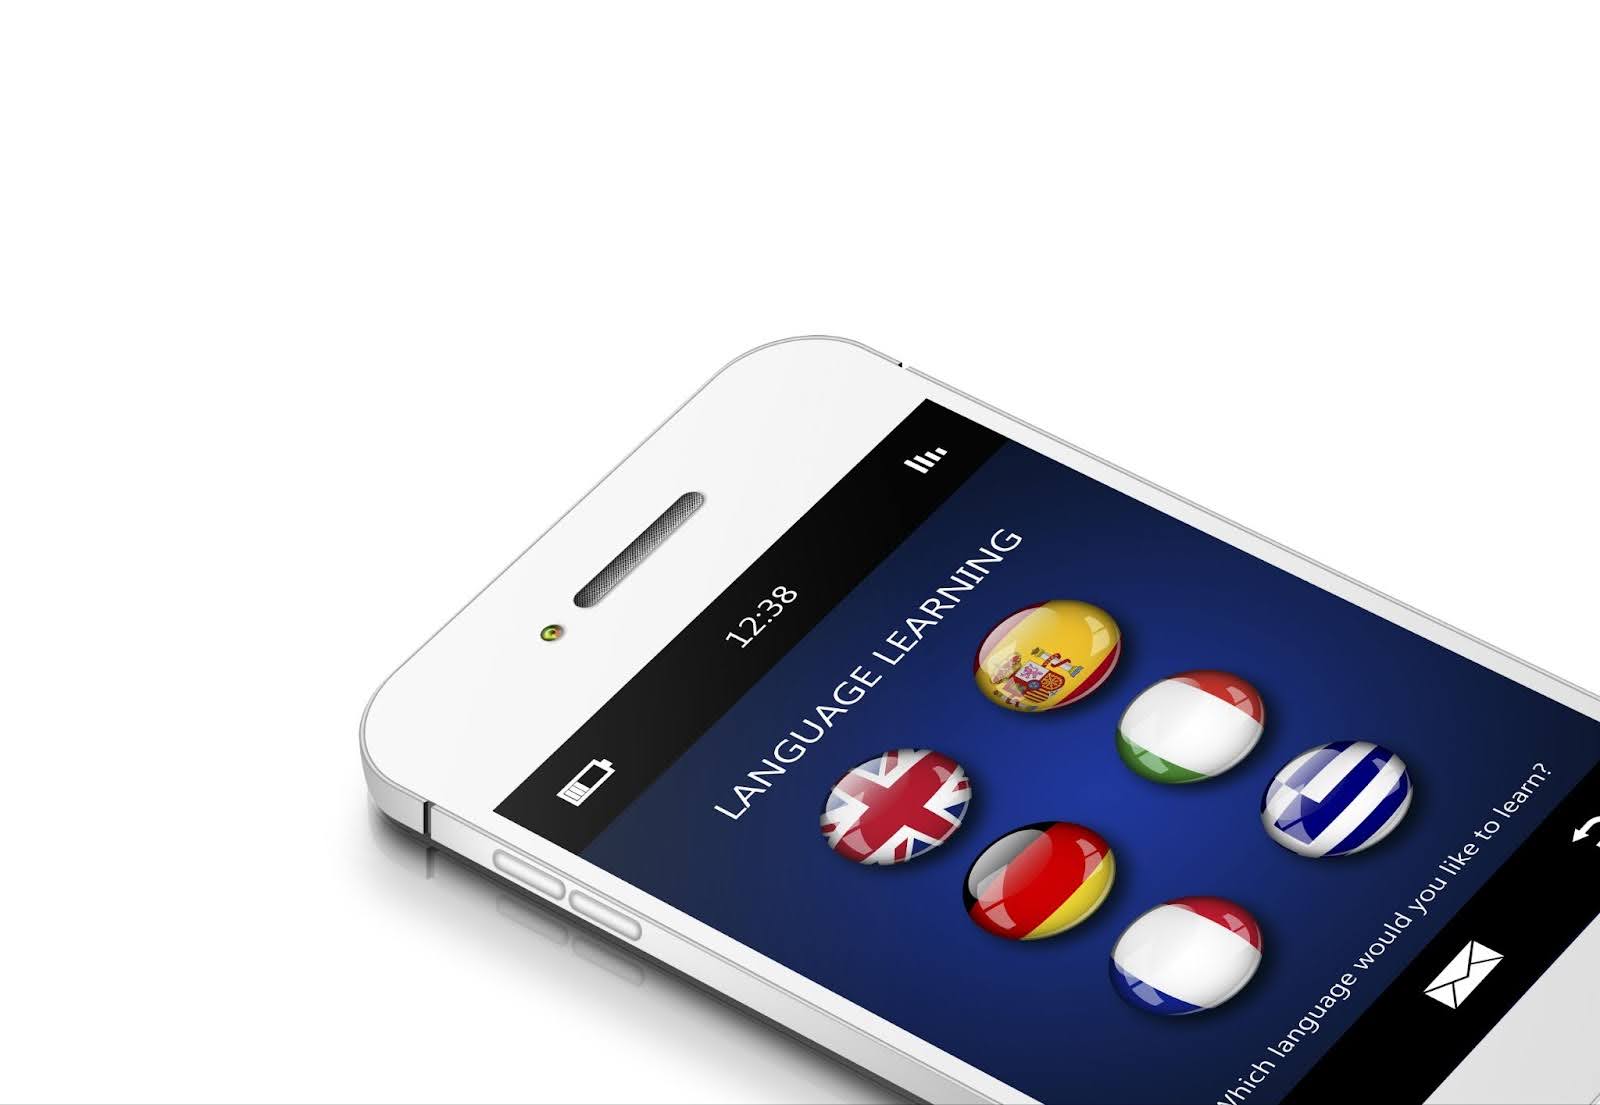 Englischlernen am Smartphone: Sprachlern-Apps machen es möglich